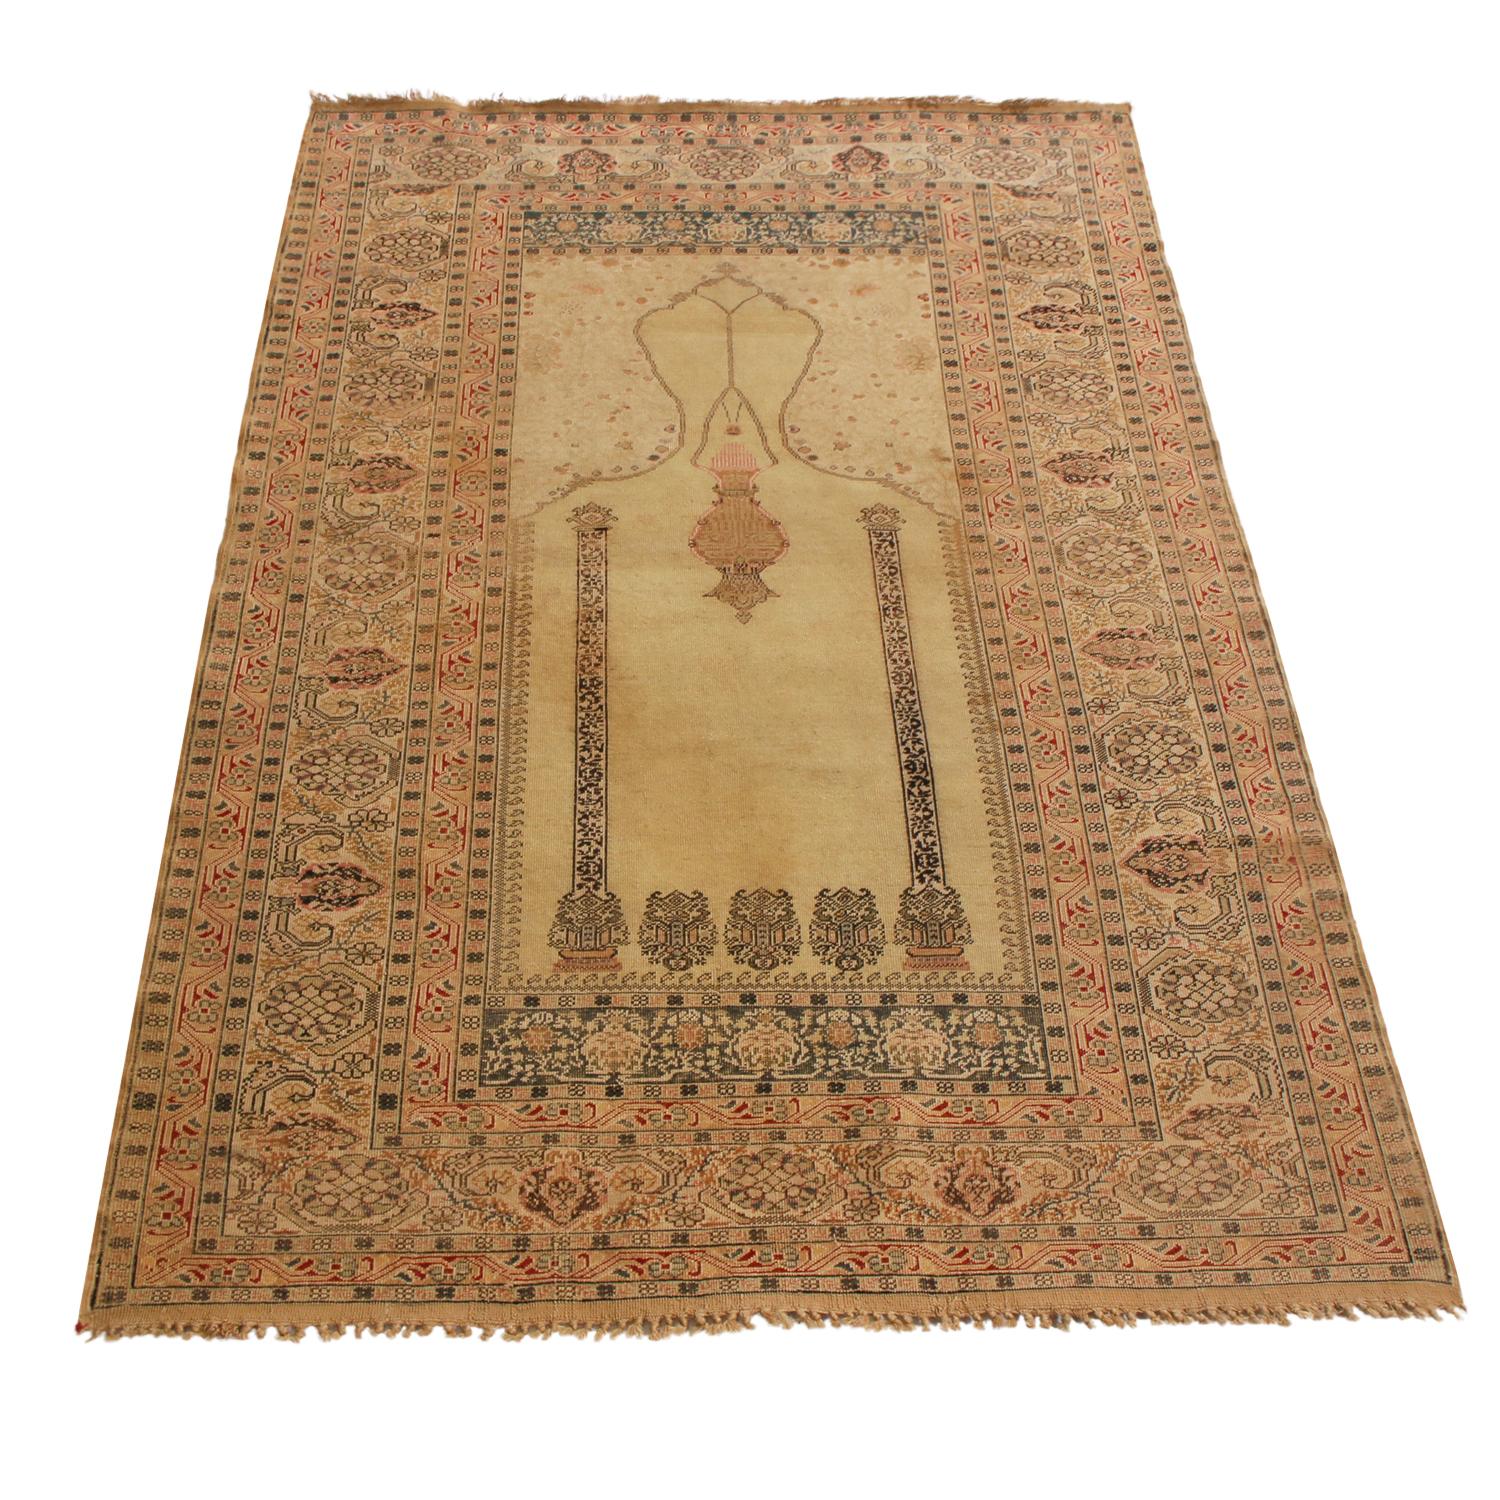 Dieser antike Kayseri-Teppich wurde zwischen 1880 und 1890 in der Türkei aus hochwertiger Wolle handgeknüpft und besitzt einen der natürlichsten leuchtenden Goldgründe, der durch die Schärfe der Details des Kronleuchters, die einzigartig großzügige